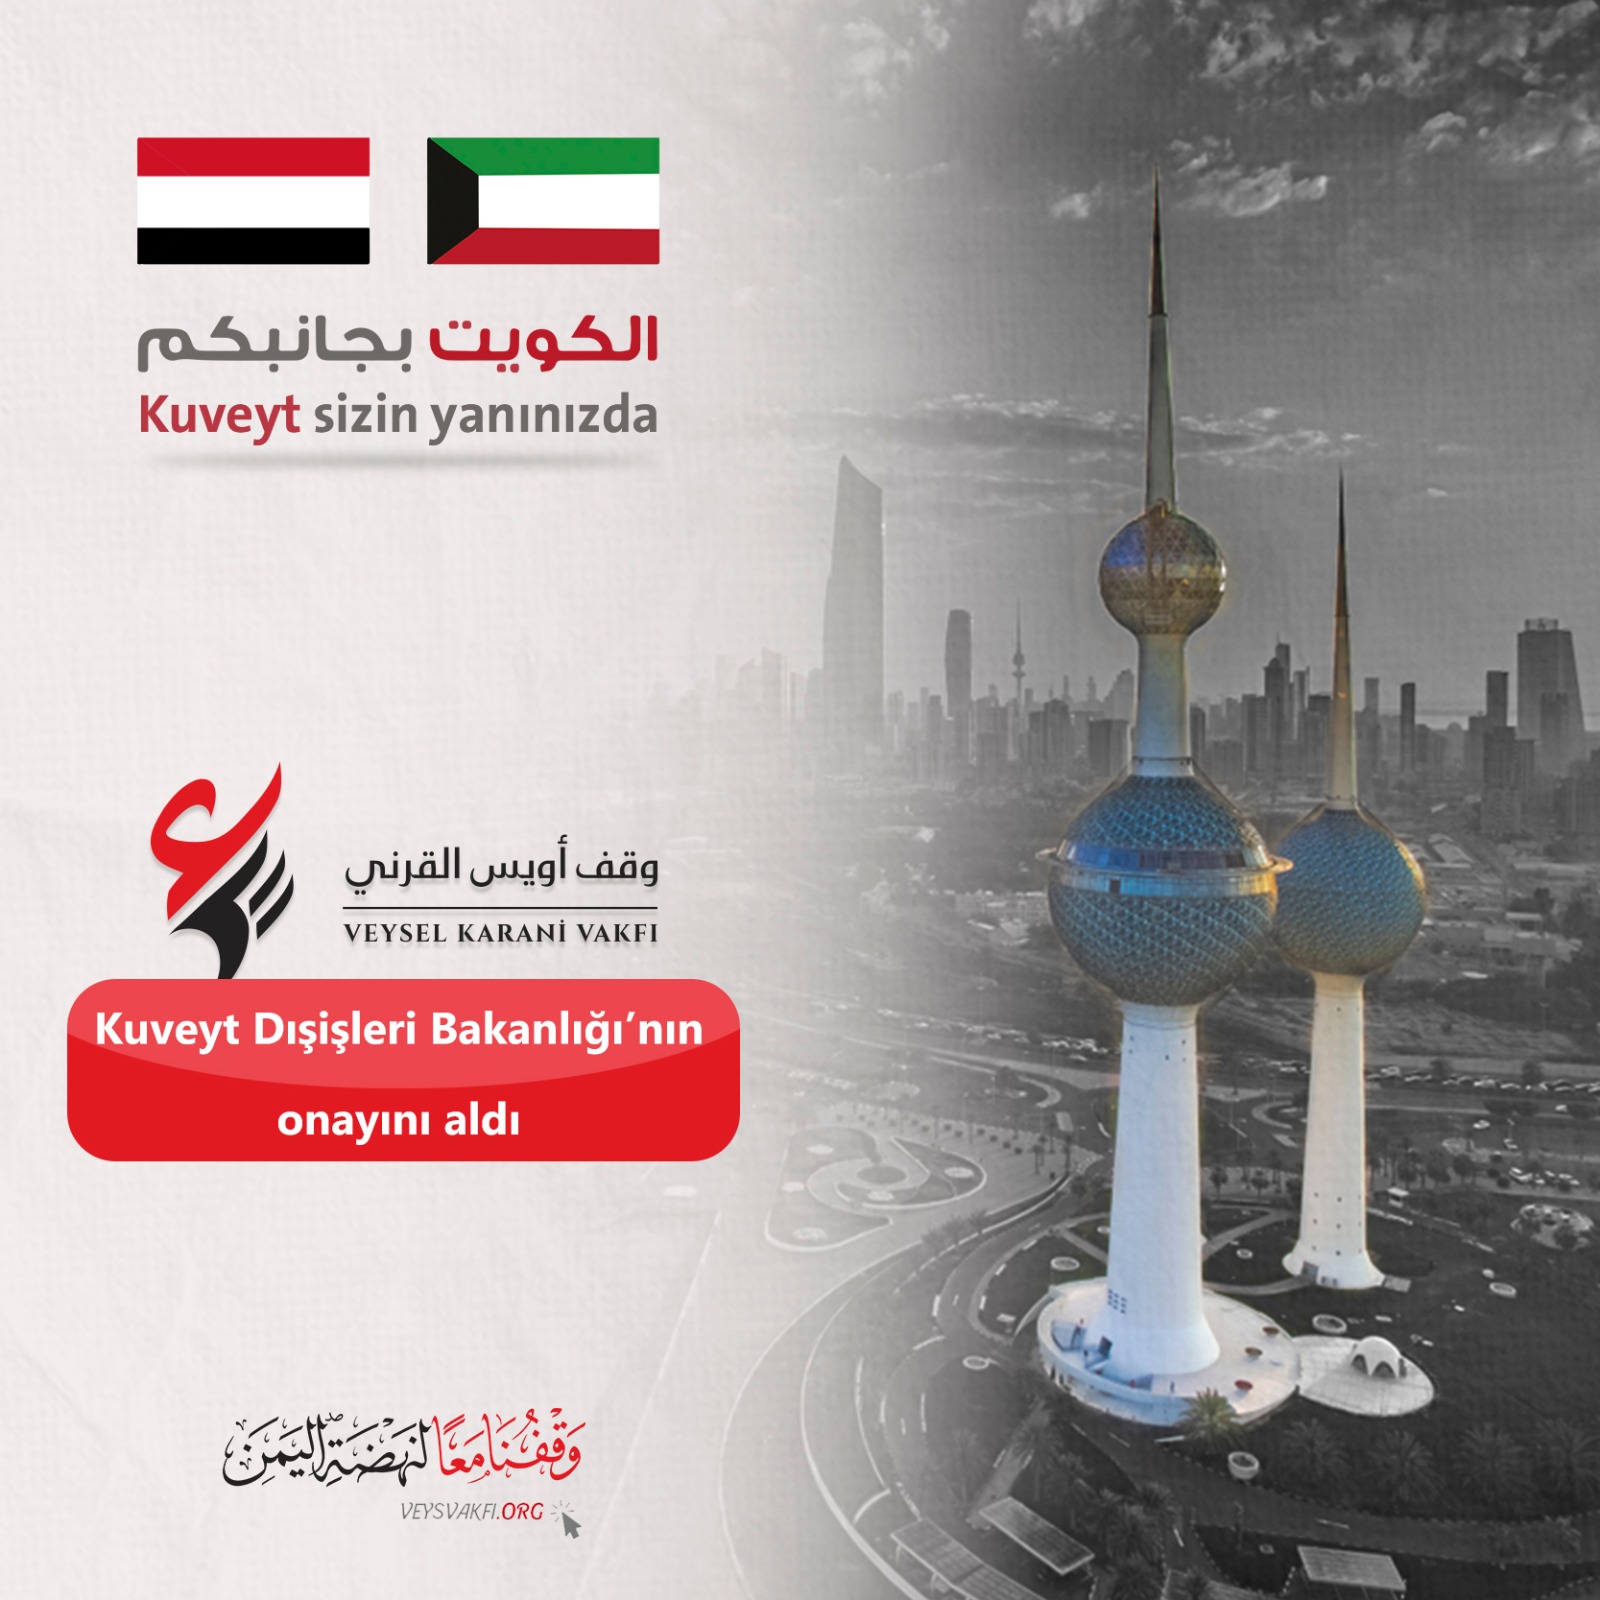 Veysel Karani Vakfı Kuveyt Dışişleri Bakanlığı’nın onayını aldı.